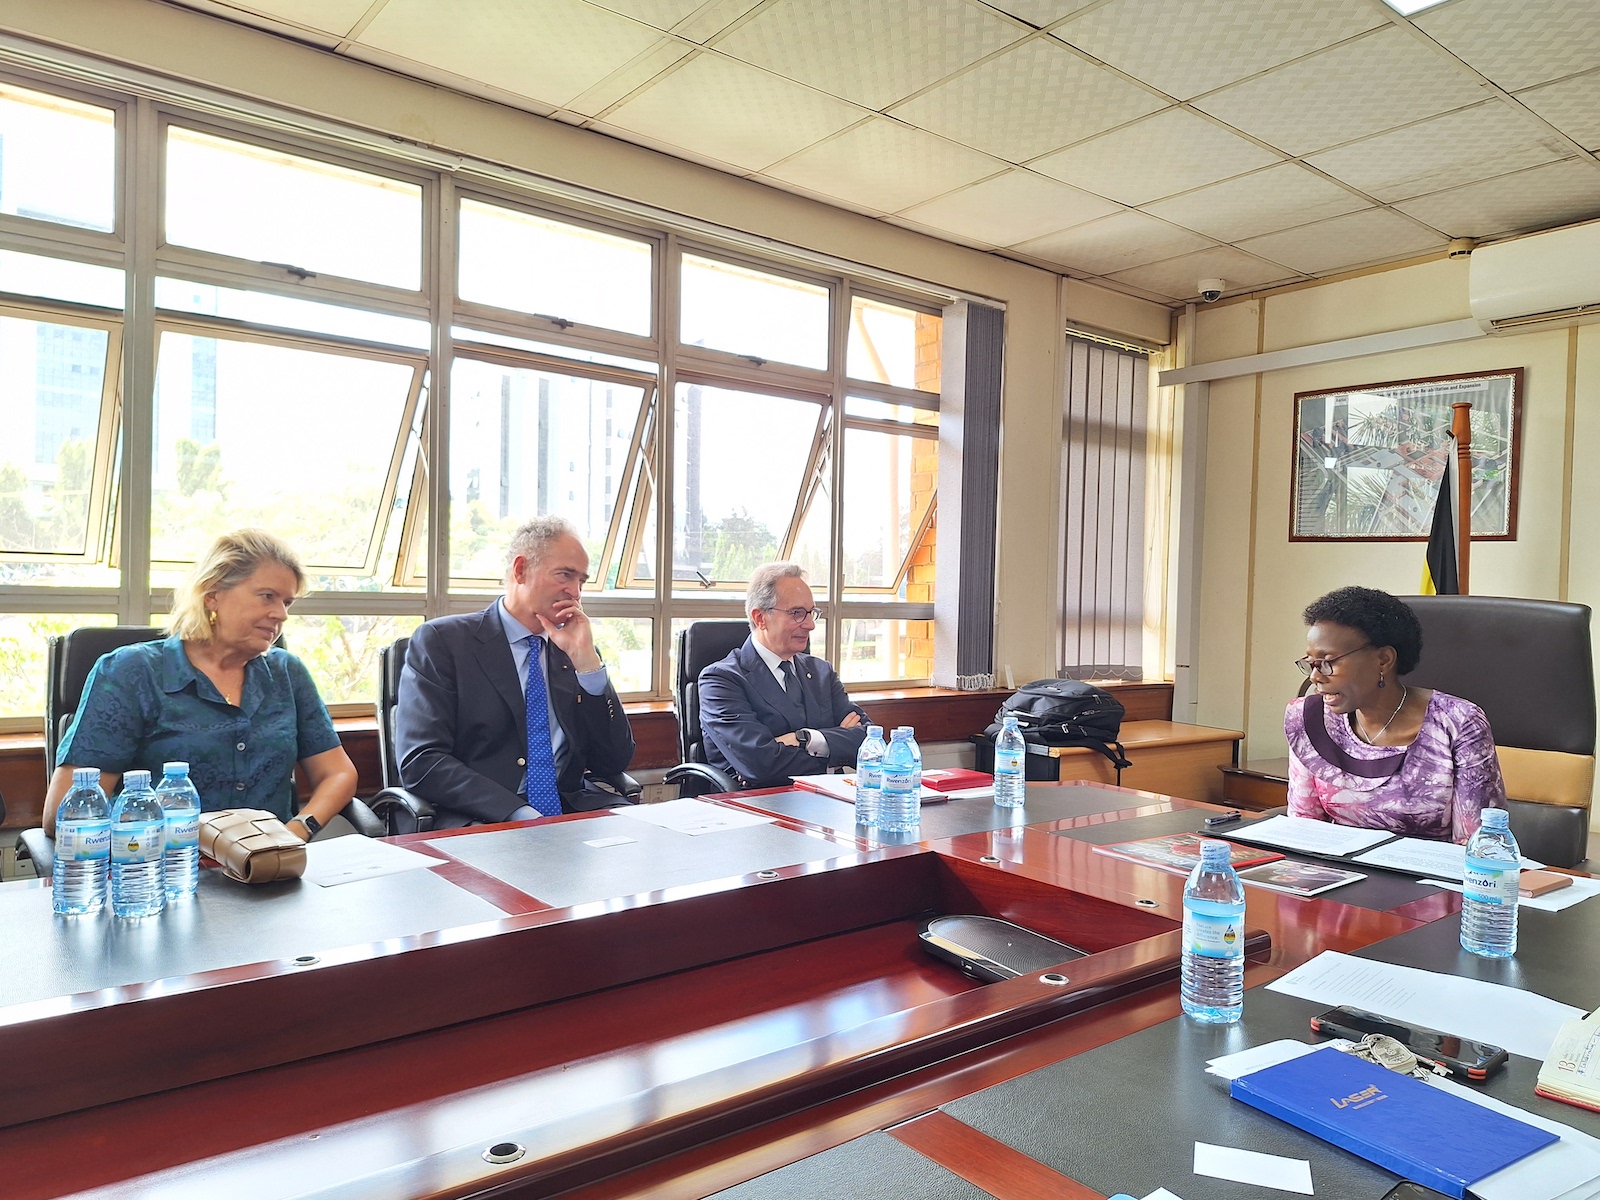 Visita de la Orden de Malta en Uganda y Sudán del Sur, con encuentros y perspectivas de actividades futuras